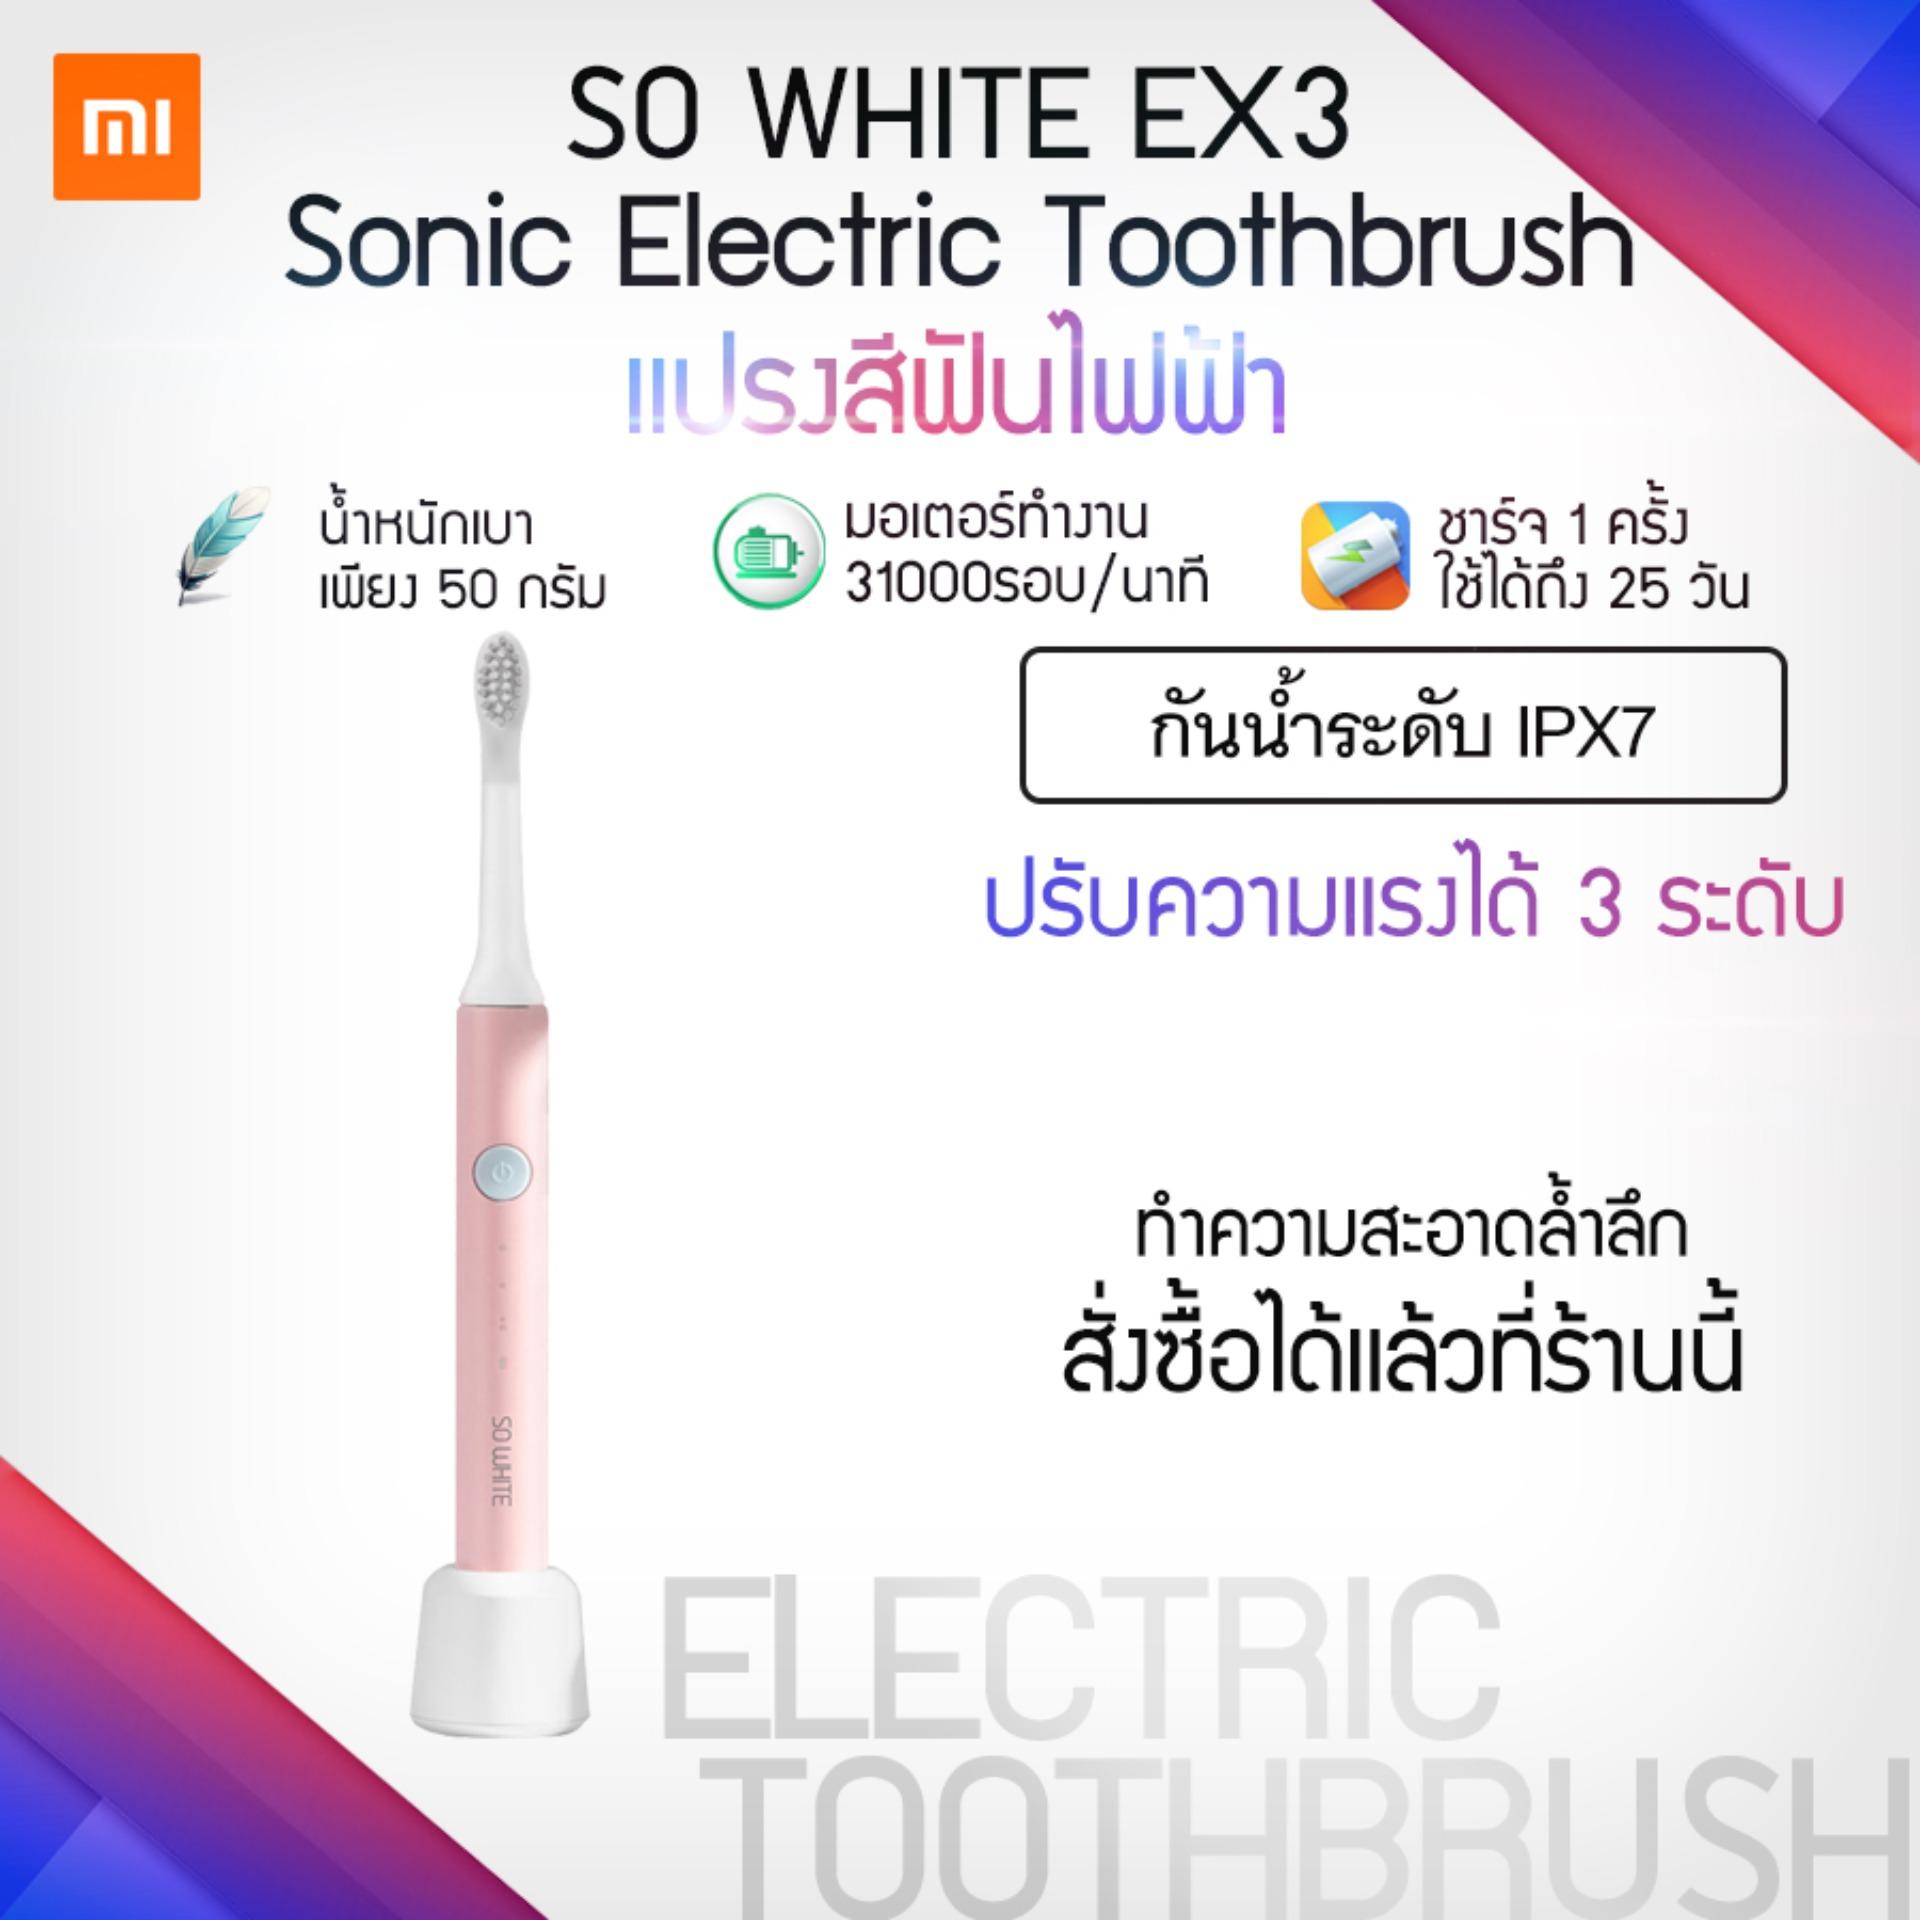 แปรงสีฟันไฟฟ้าเพื่อรอยยิ้มขาวสดใส พิษณุโลก Xiaomi SO WHITE EX3: Sonic Electric Toothbrush แปรงสีฟันไฟฟ้า !